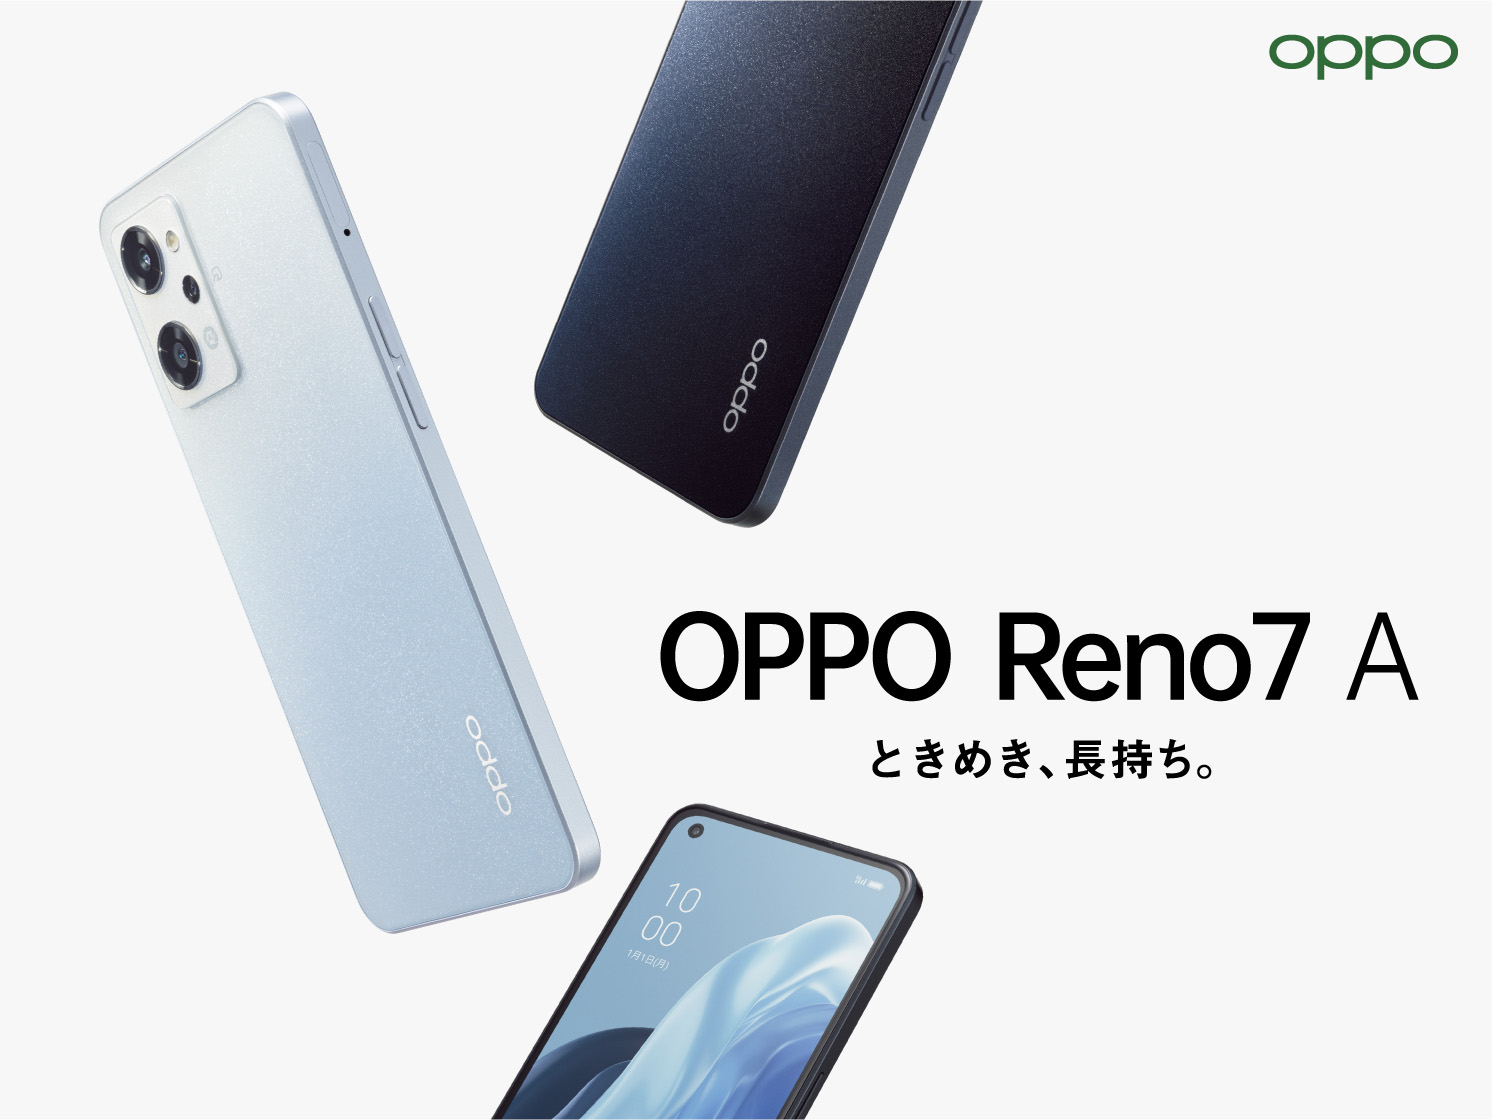 「OPPO Reno7 A」が6月23日(木)から販売開始 コンセプトは ...